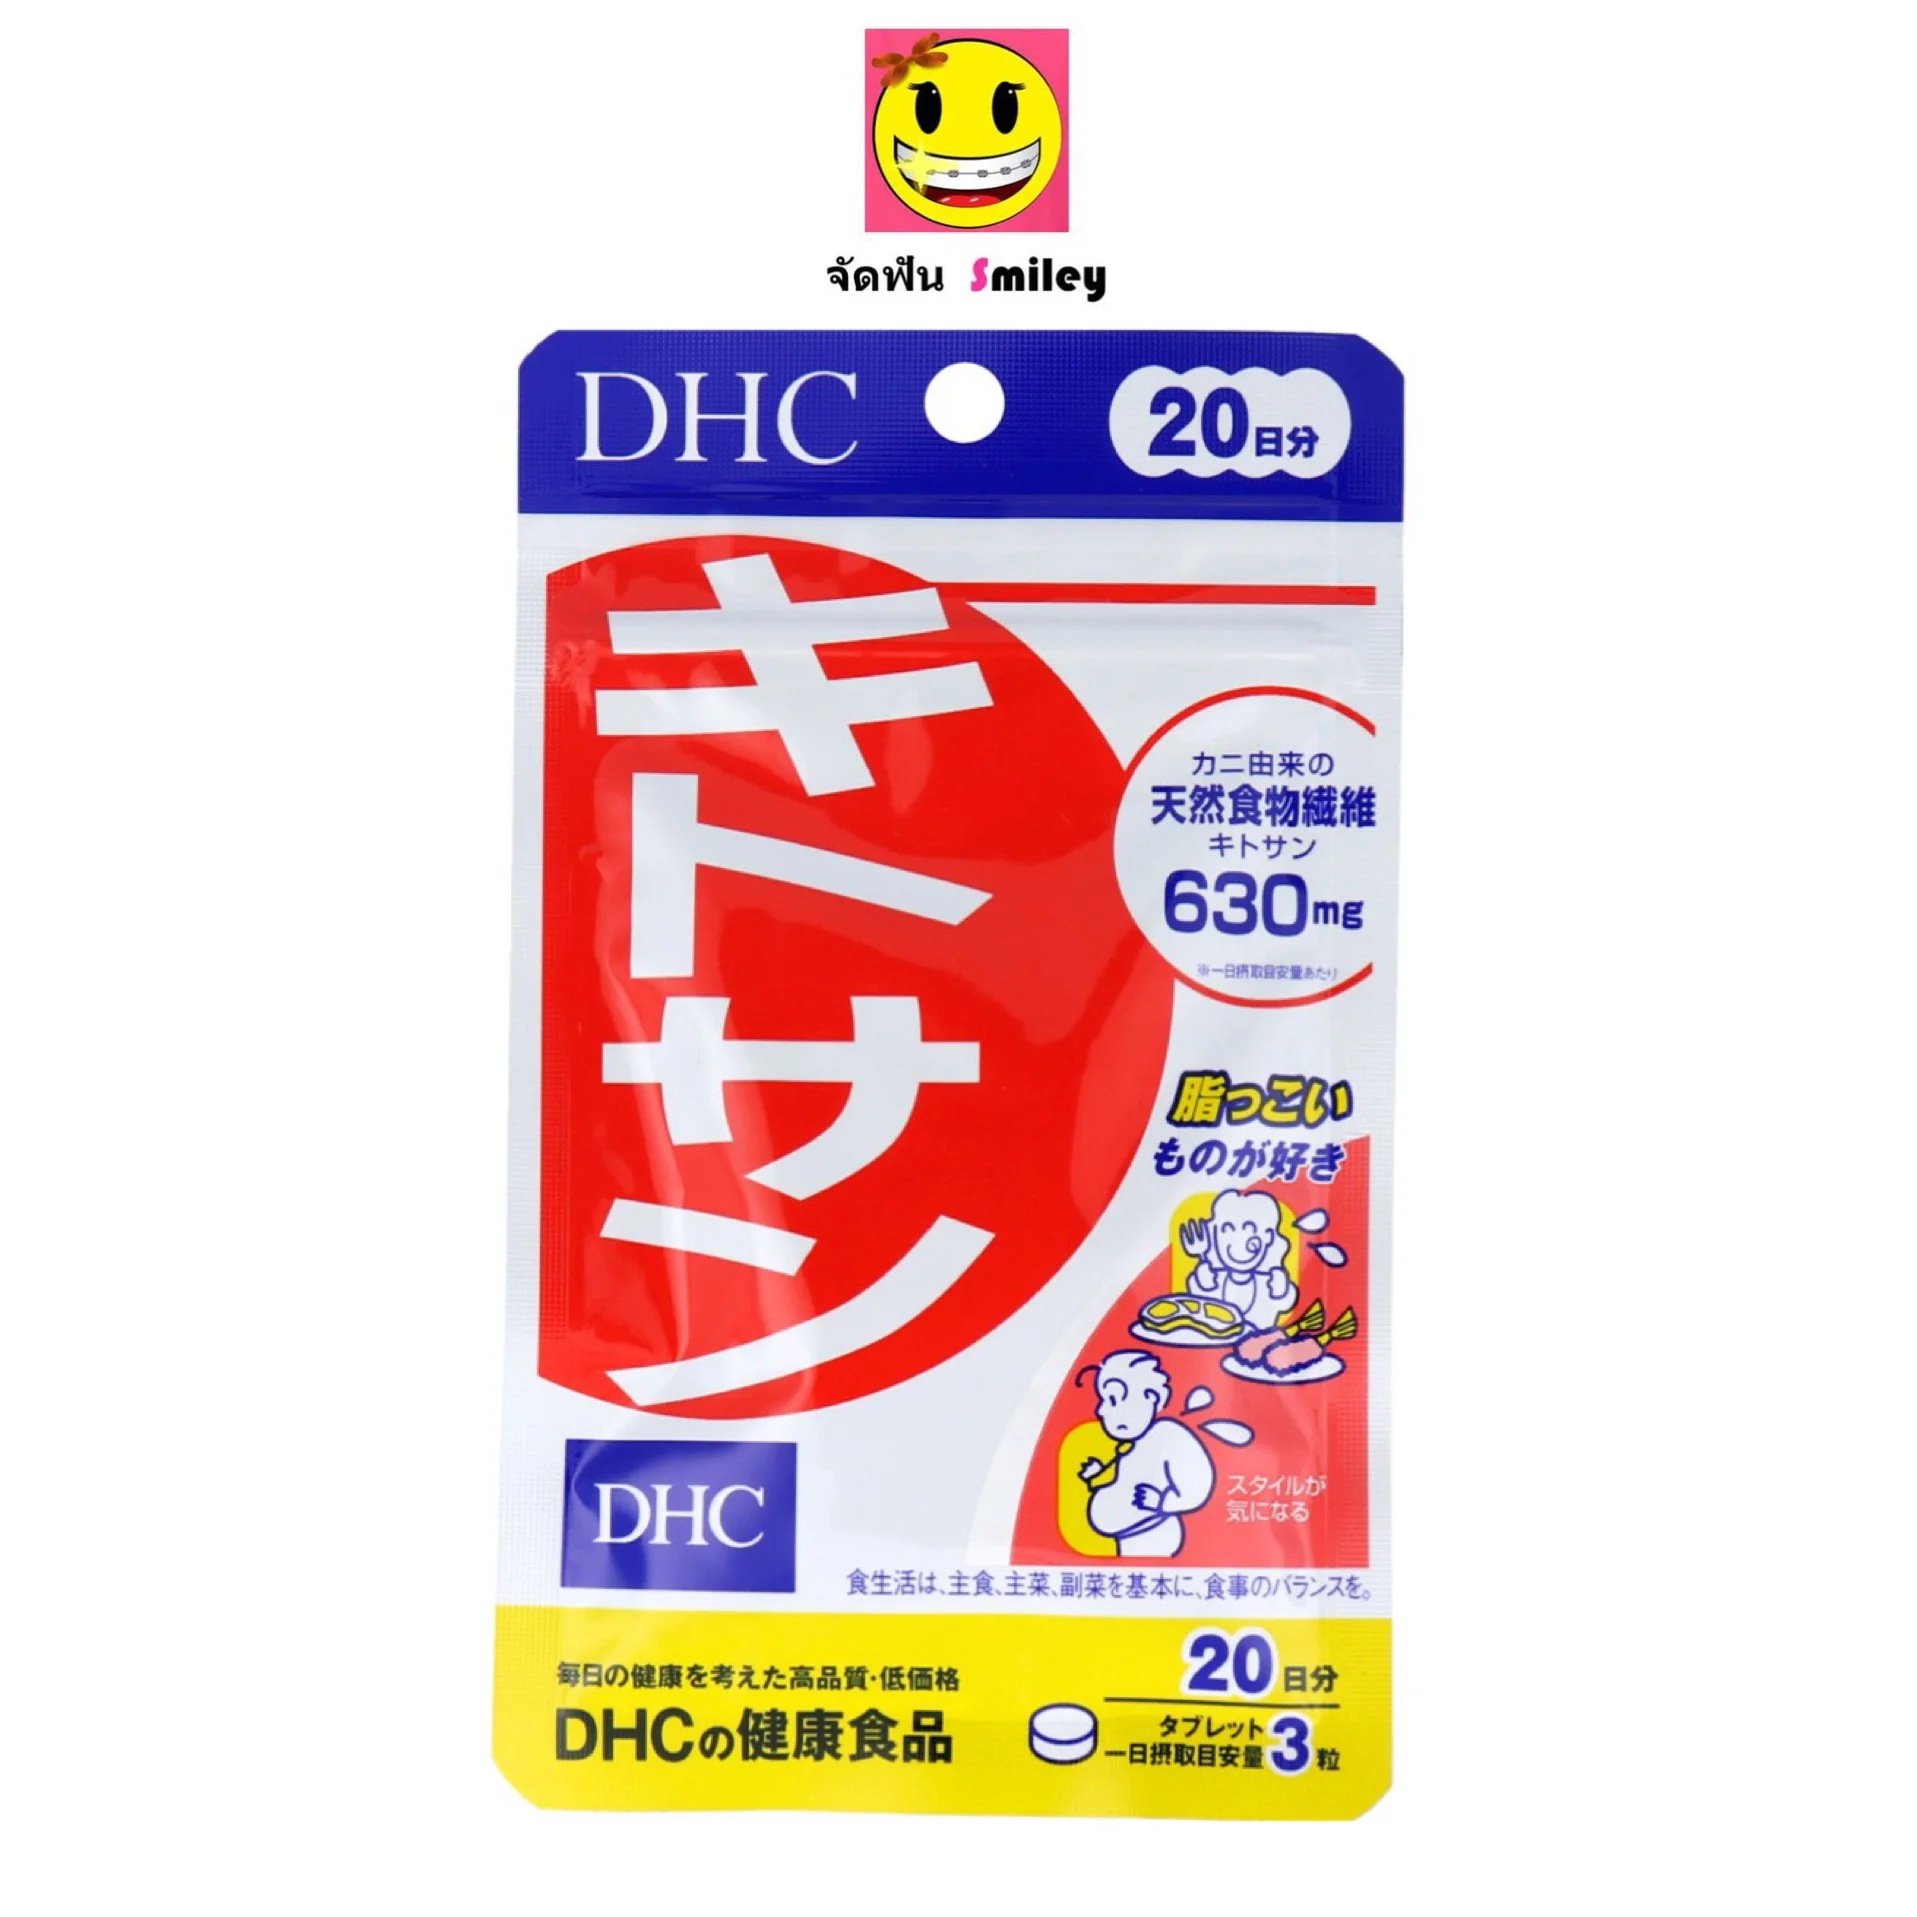 DHC kitosan (ไคโตซาน) 20 วัน หมดอายุ 2023 ของญี่ปุ่นแท้100%